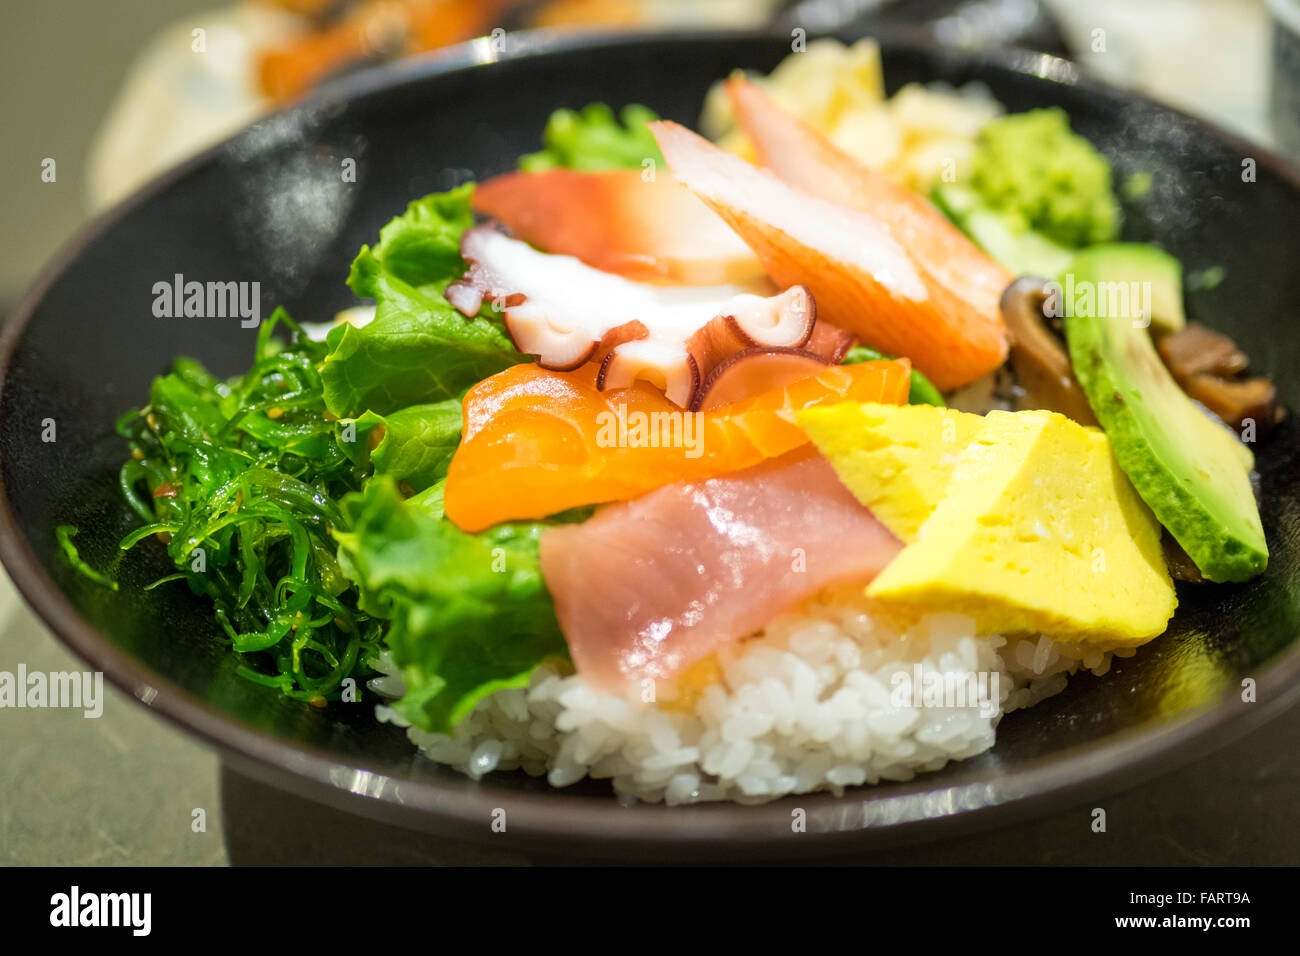 Un bol de chirashi (chirashizushi), qui se compose de riz sushi surmonté d'une variété de poisson cru et de légumes. Banque D'Images